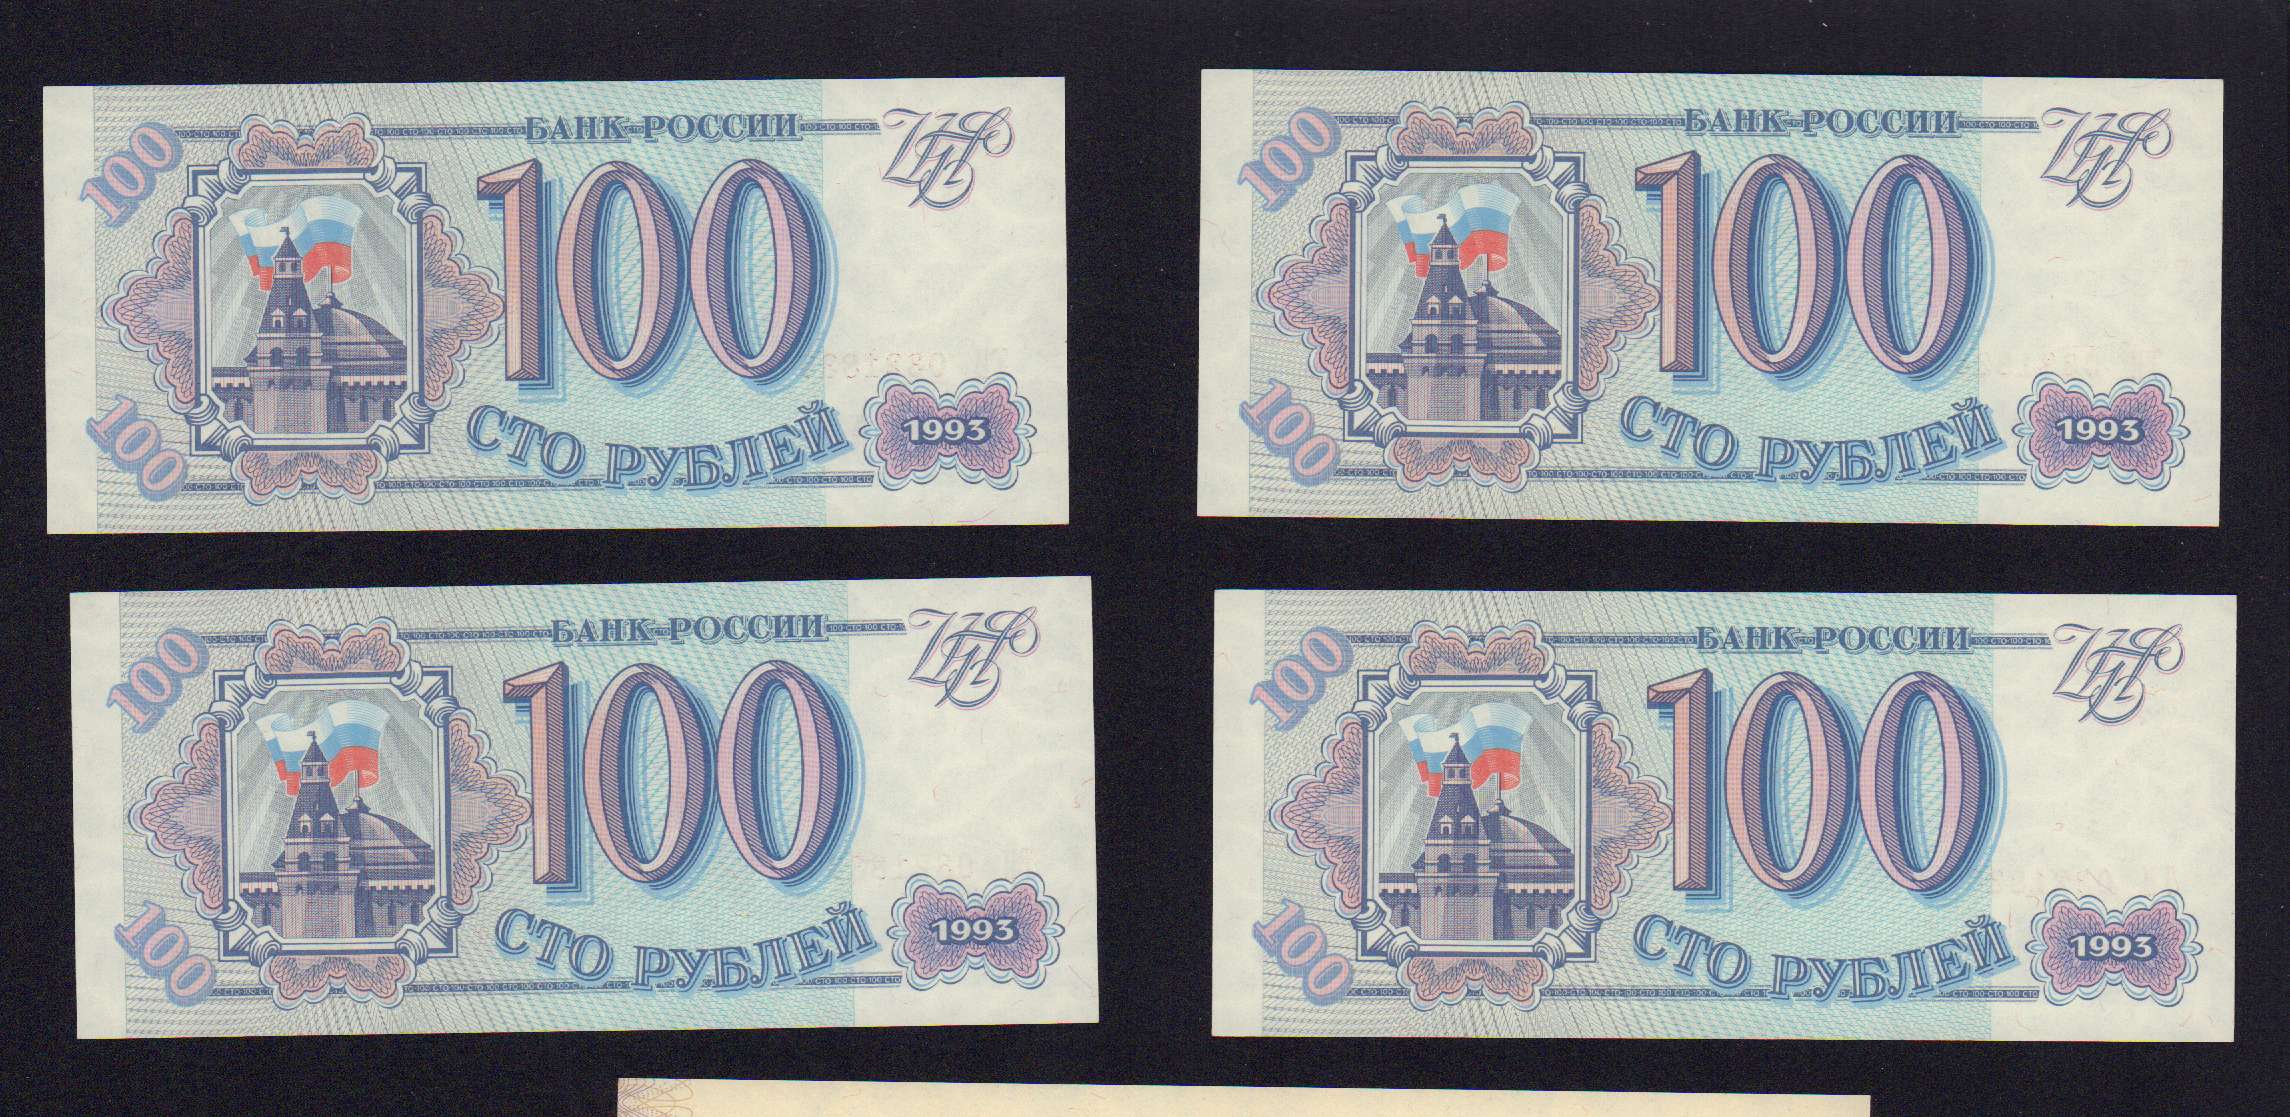 500 рублей 18. Боны 1993 года Россия.